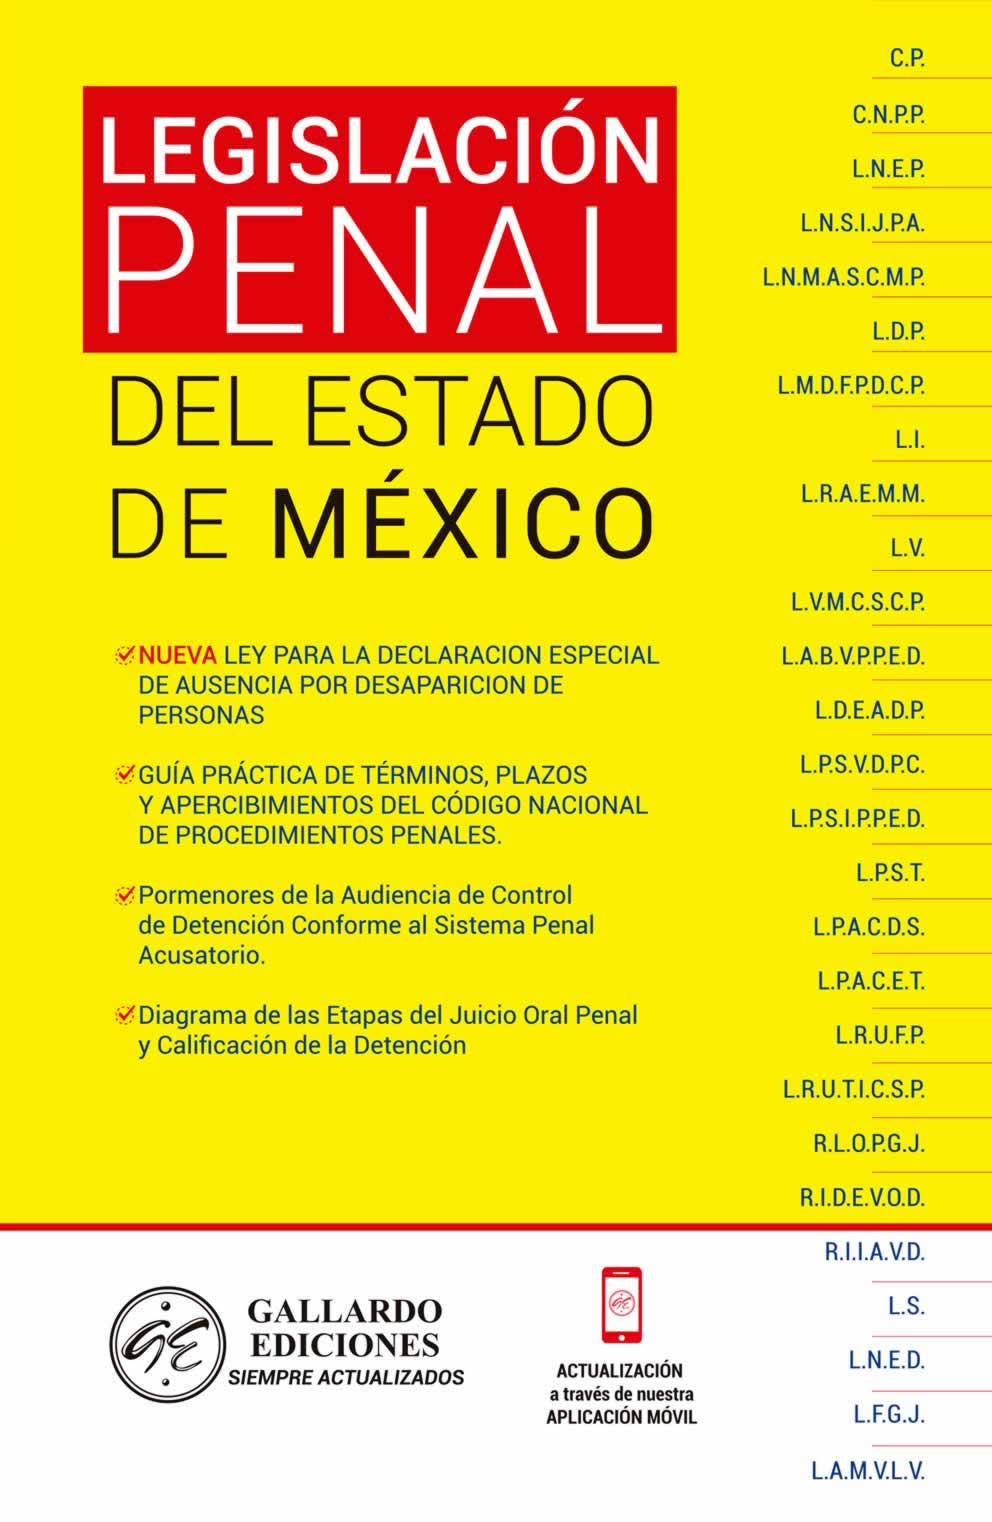 Legislación Penal del Estado de México 2021 Gallardo